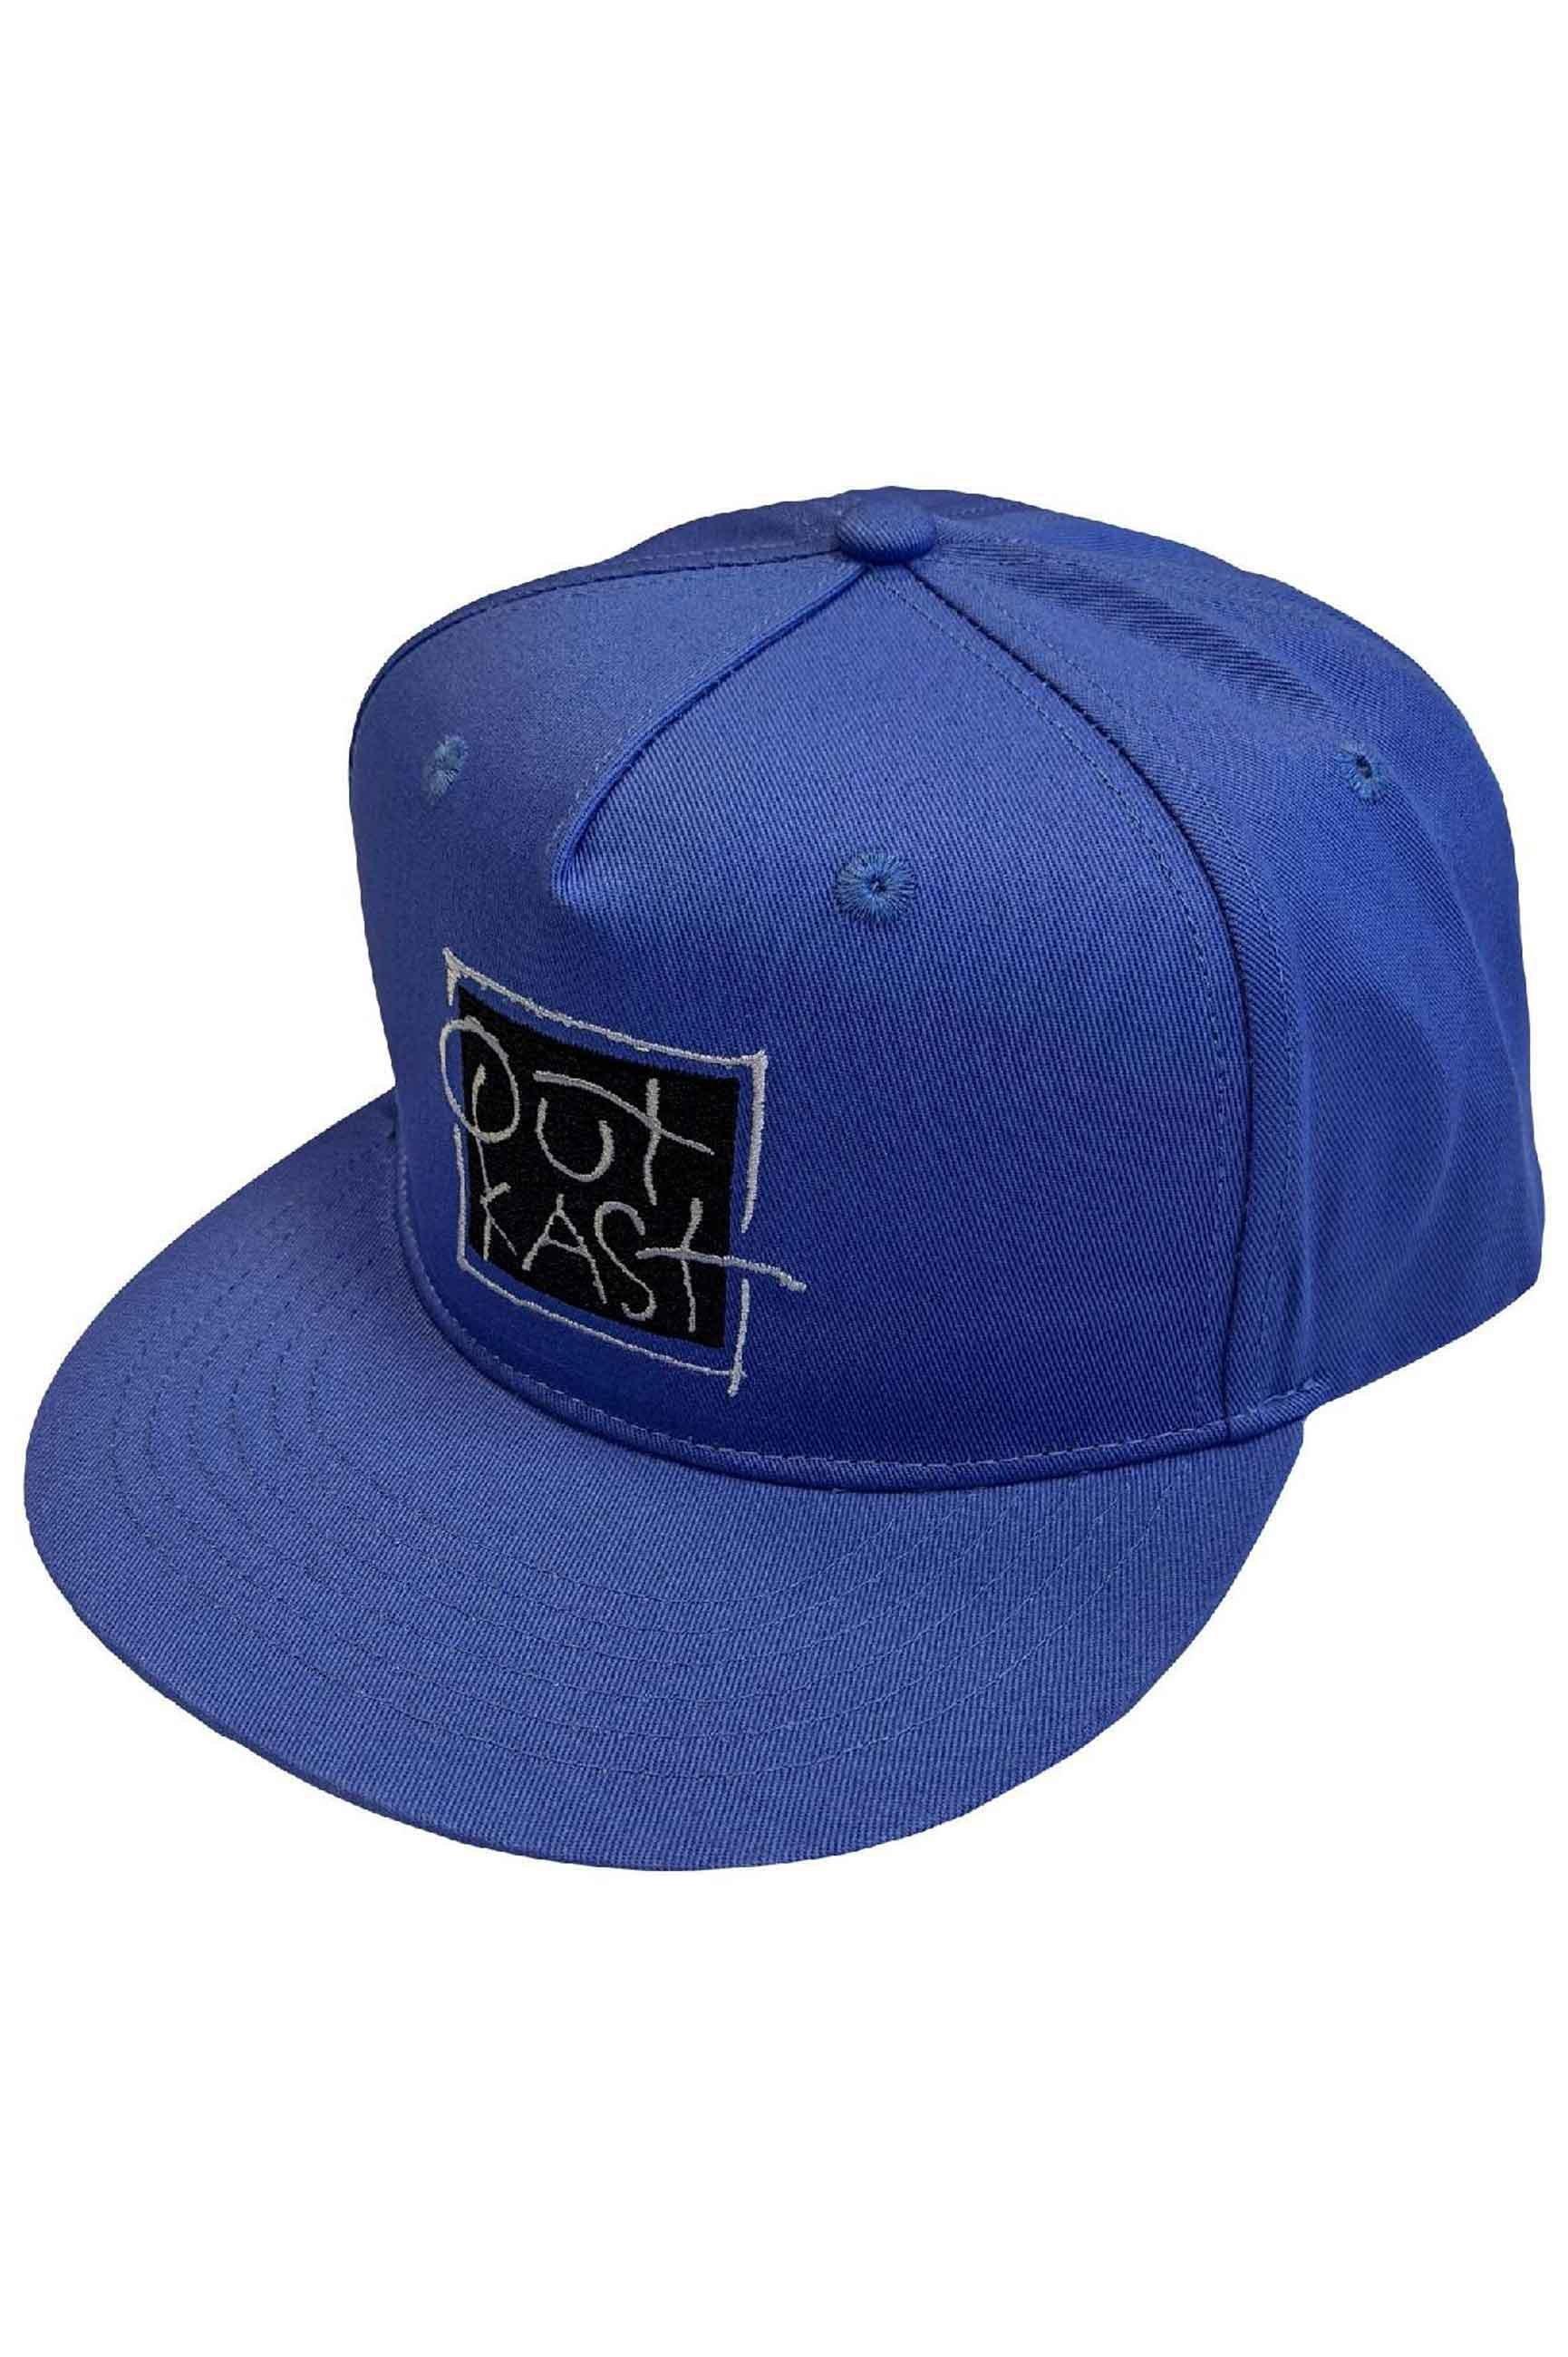 Бейсбольная кепка Snapback с логотипом Box Outkast, синий